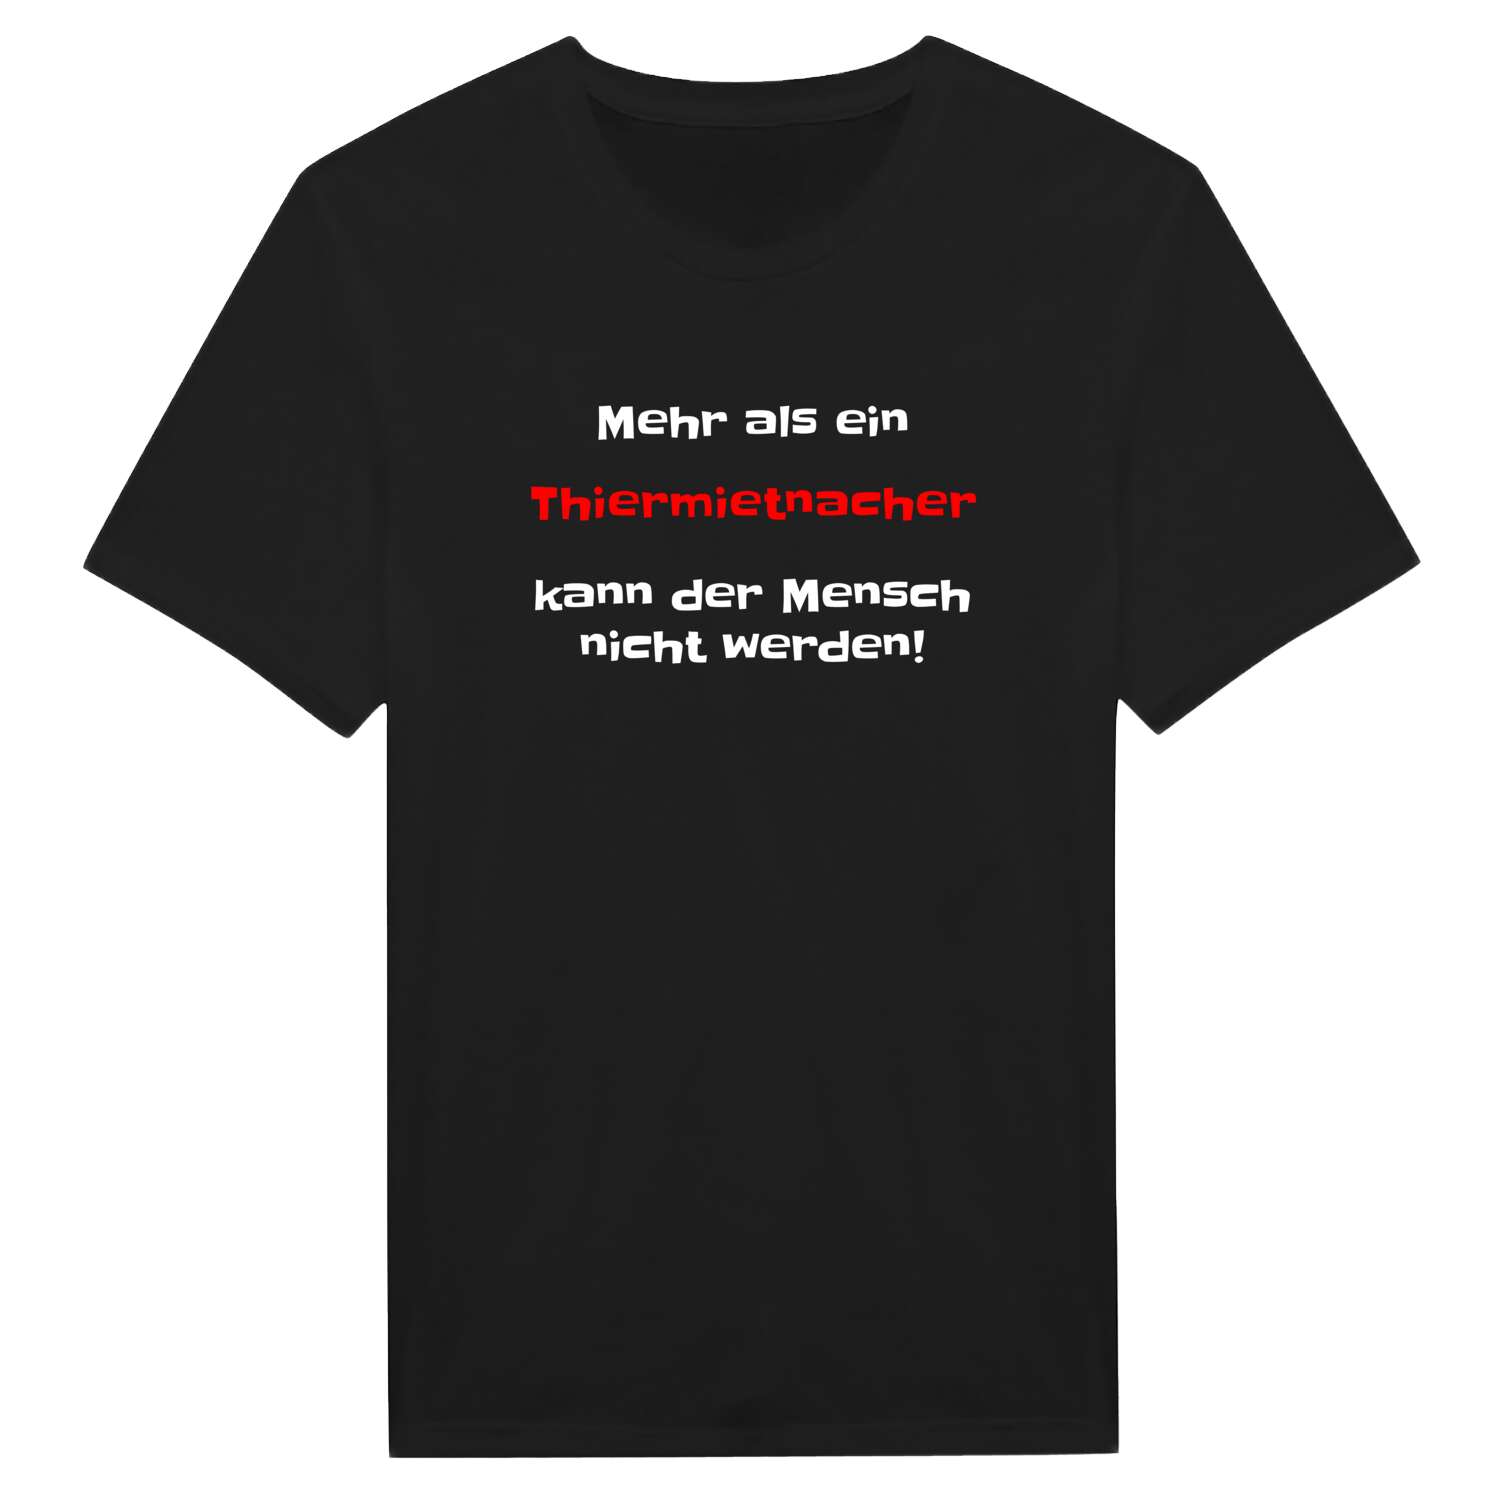 Thiermietnach T-Shirt »Mehr als ein«